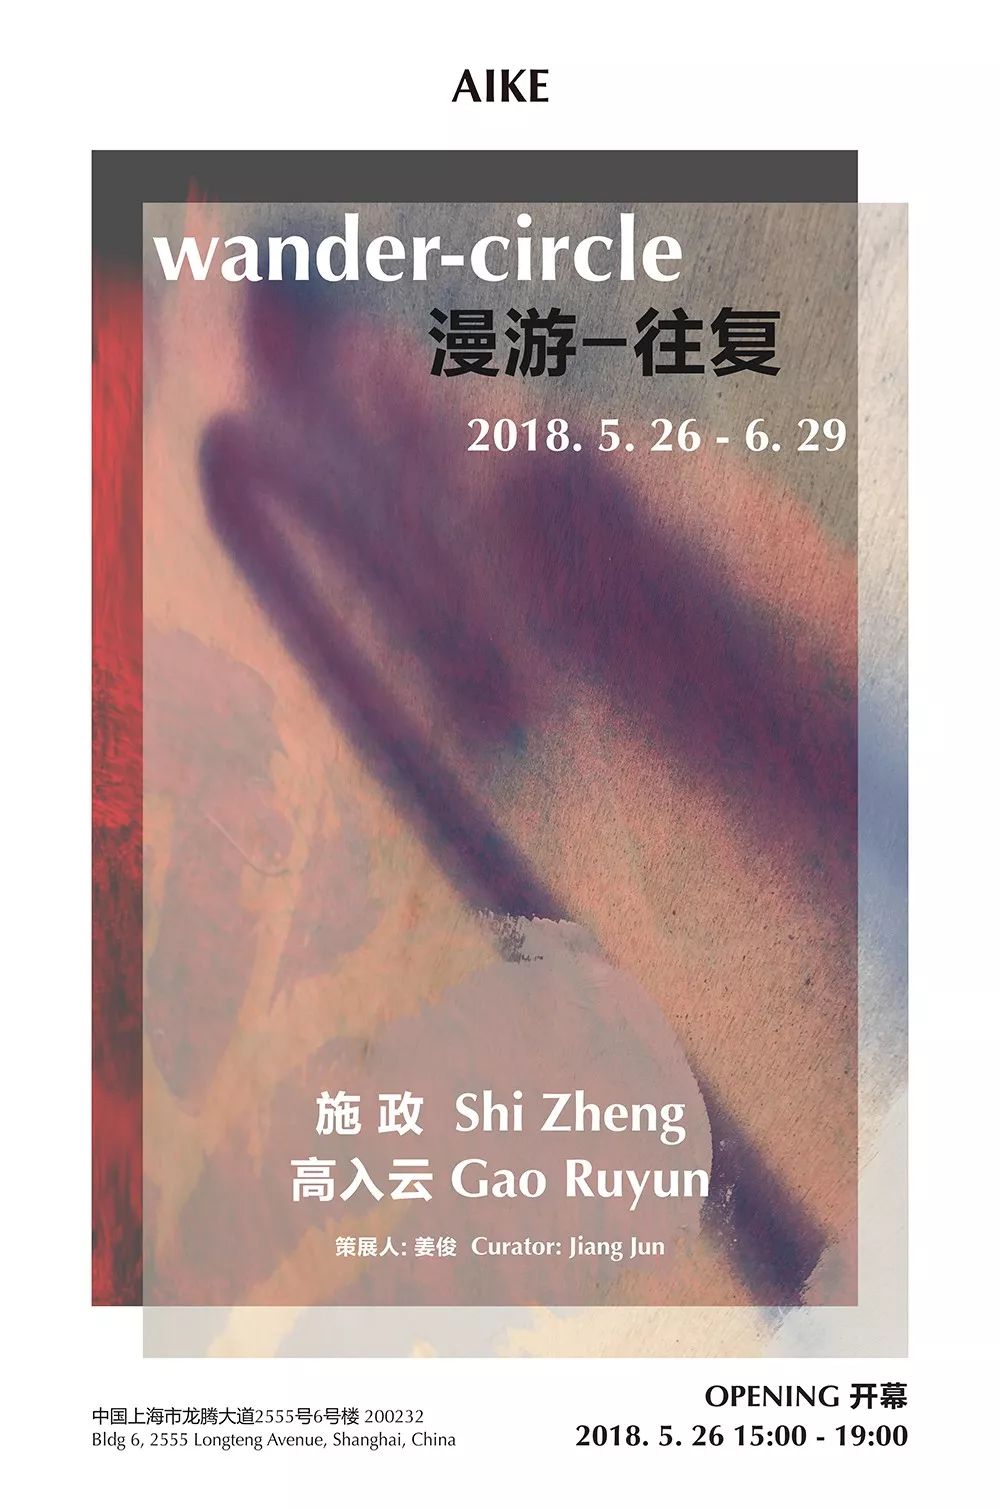 展览活动：5月末北京、上海展览-BlueDotCC, 蓝点文化创意